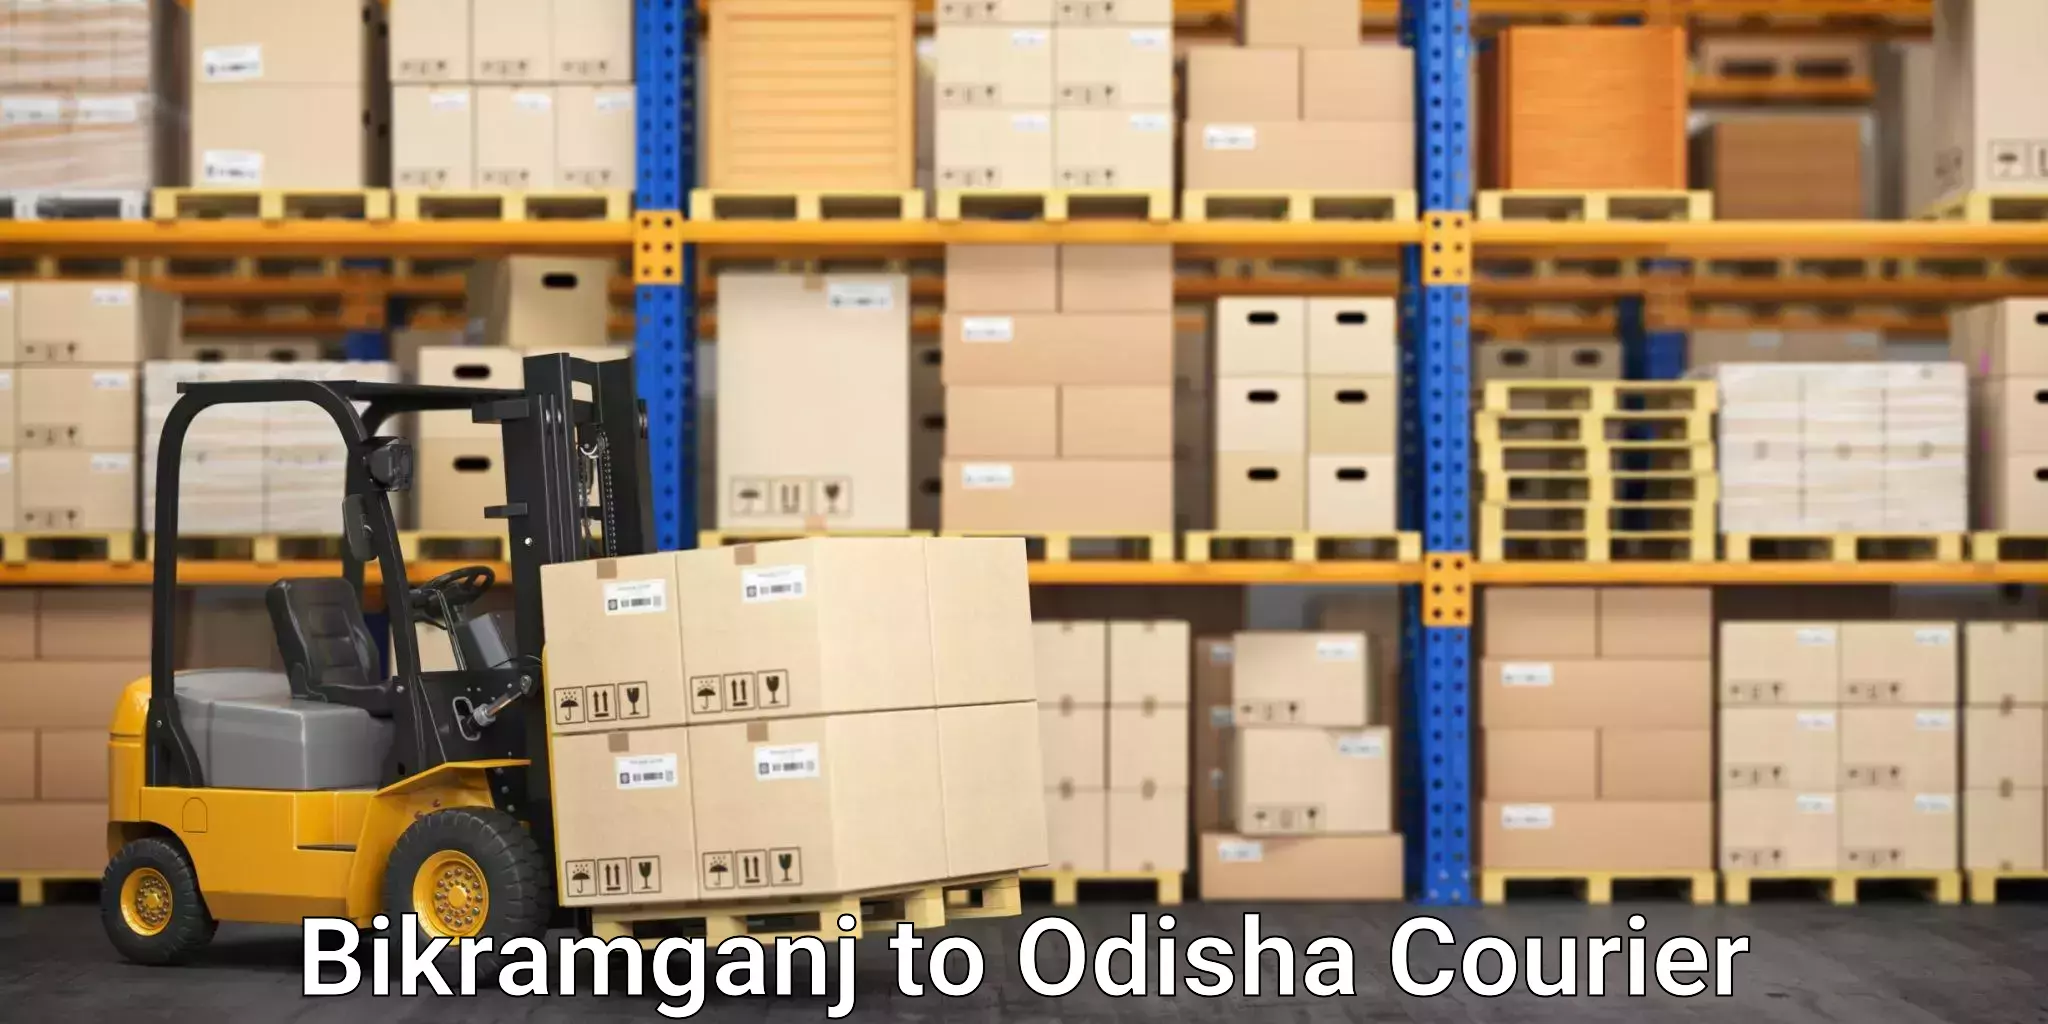 Quality moving company Bikramganj to Odisha